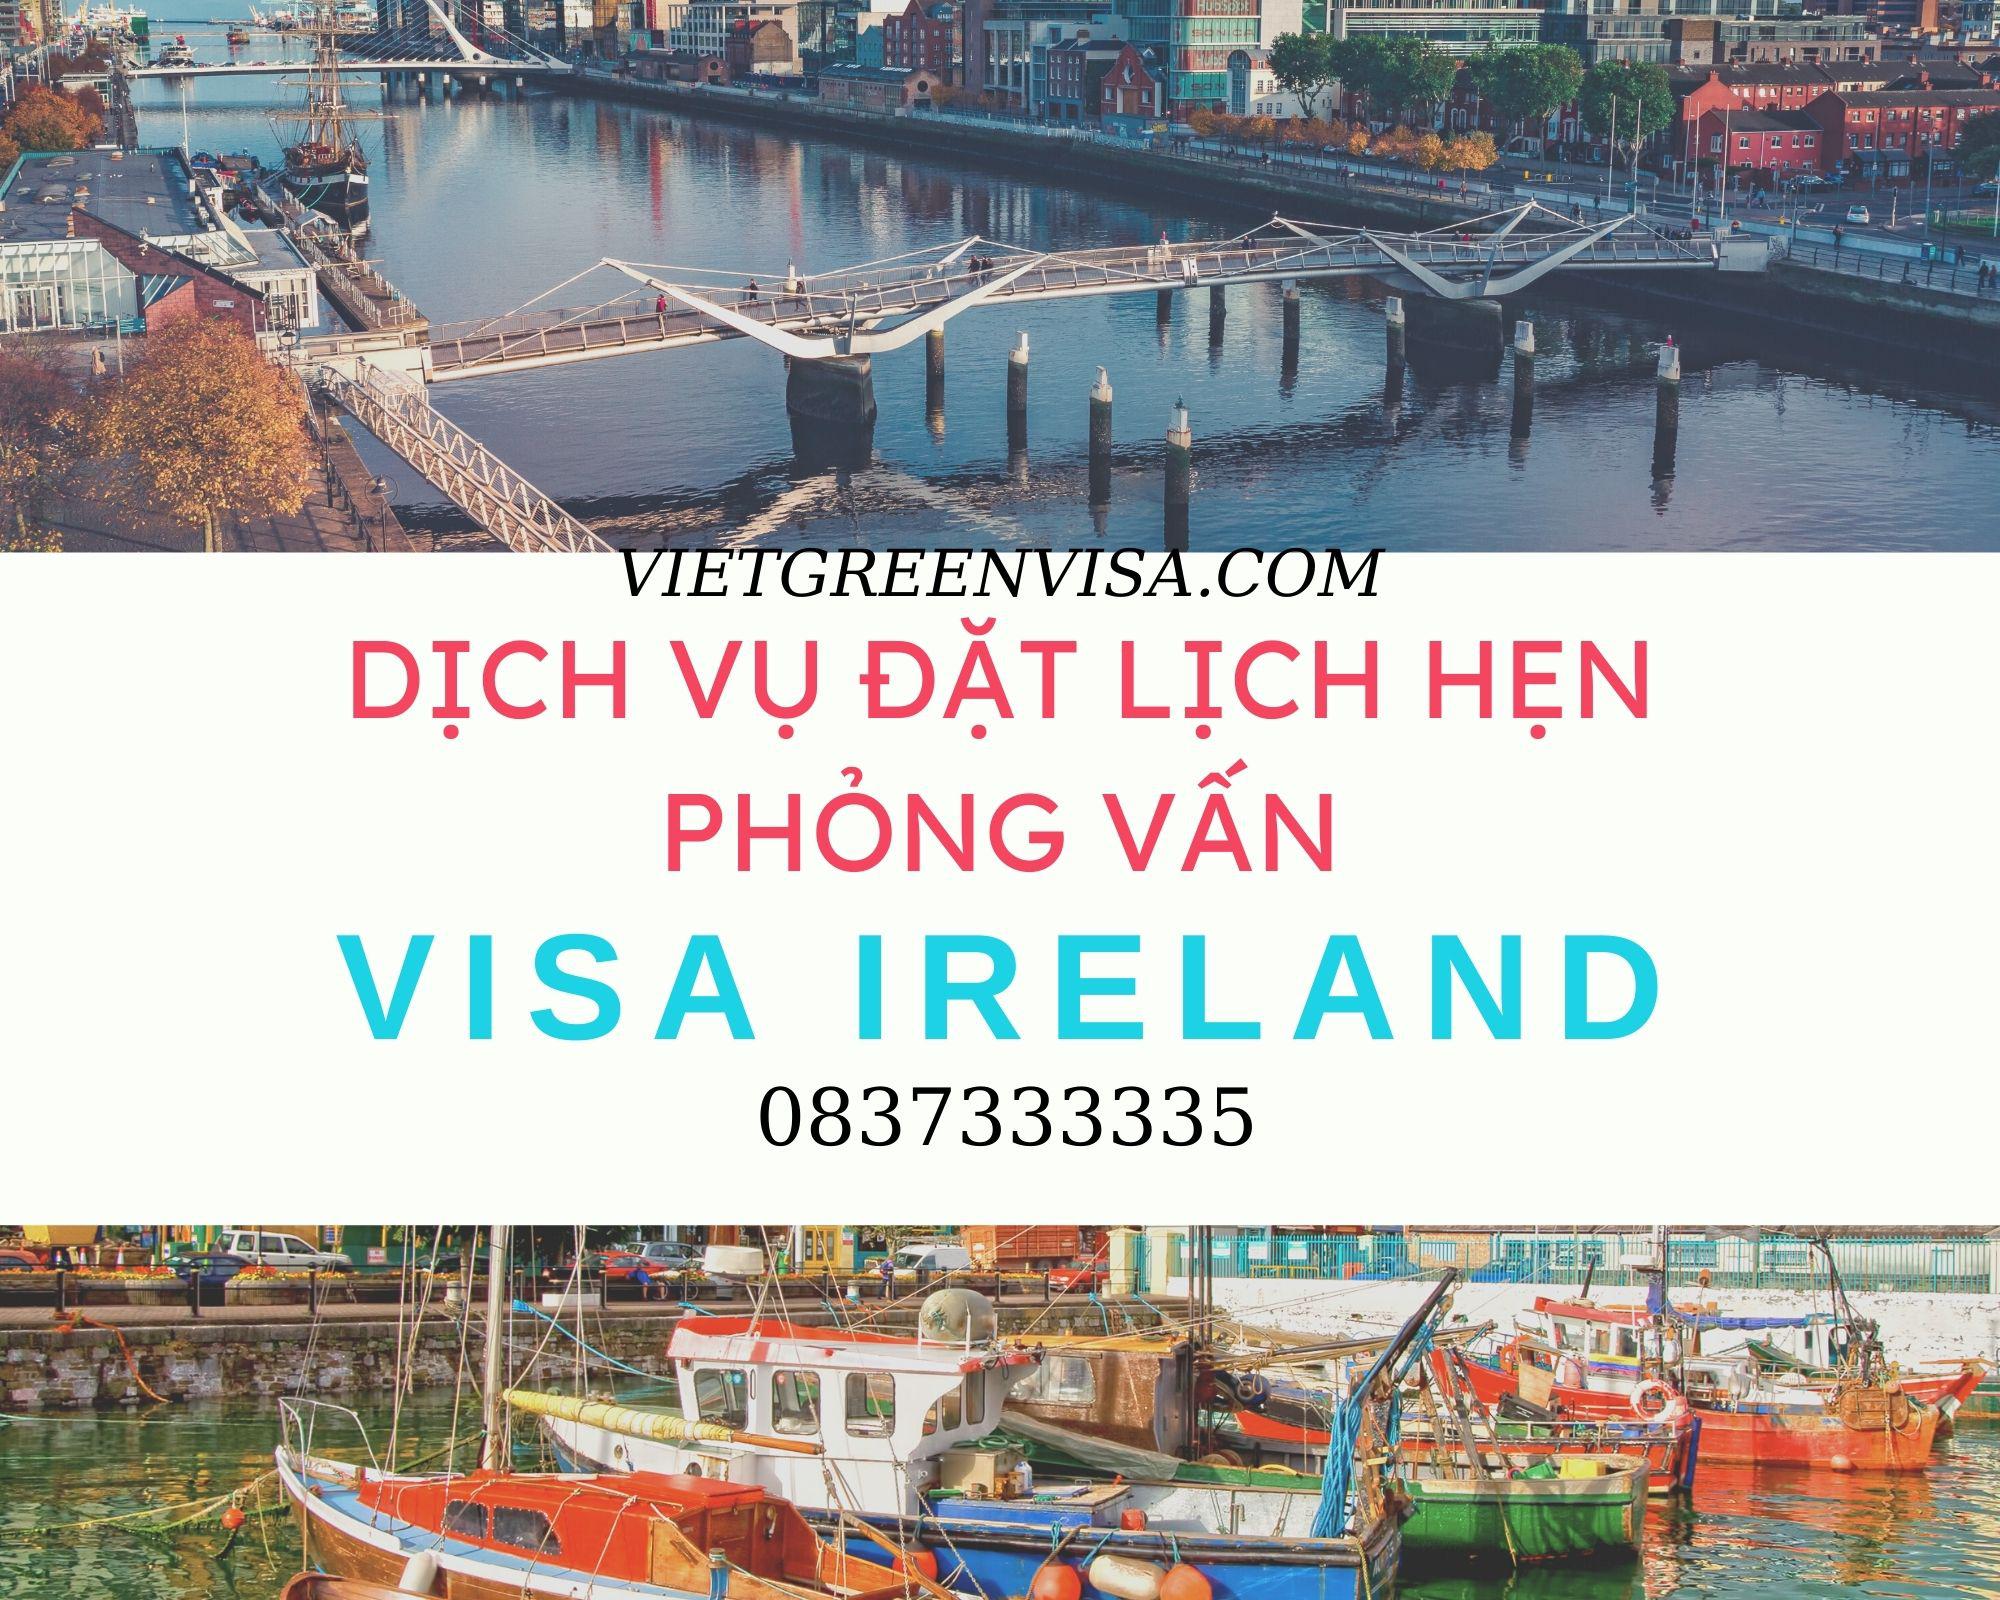 Đặt lịch hẹn phỏng vấn xin visa Ireland nhanh gọn